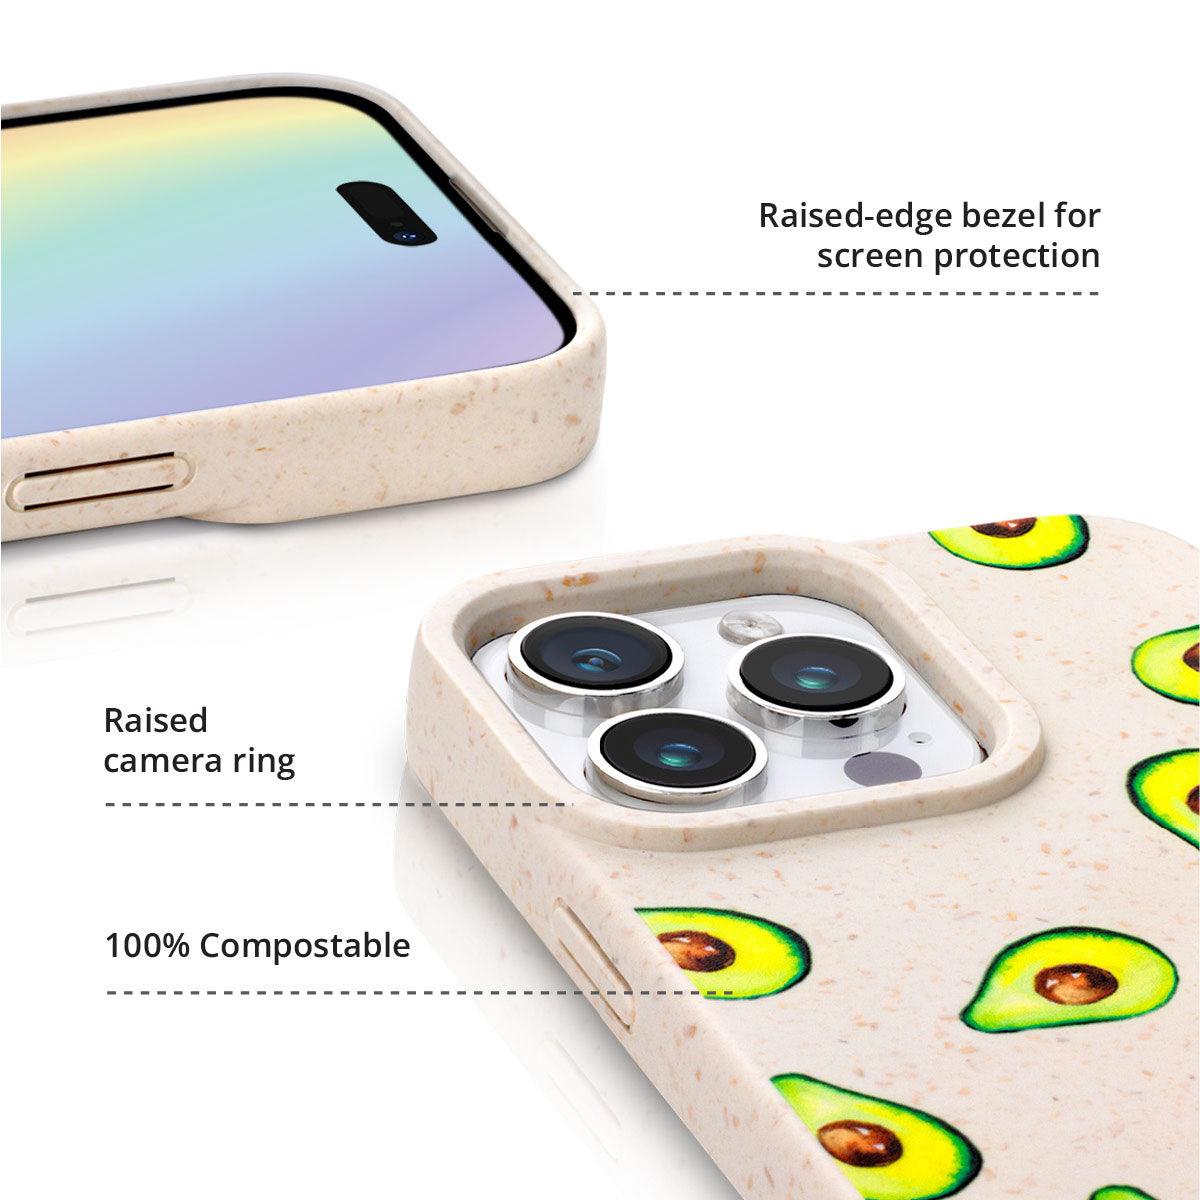 iPhone 12 Pro Lemon Squeezy Eco Phone Case - CORECOLOUR AU